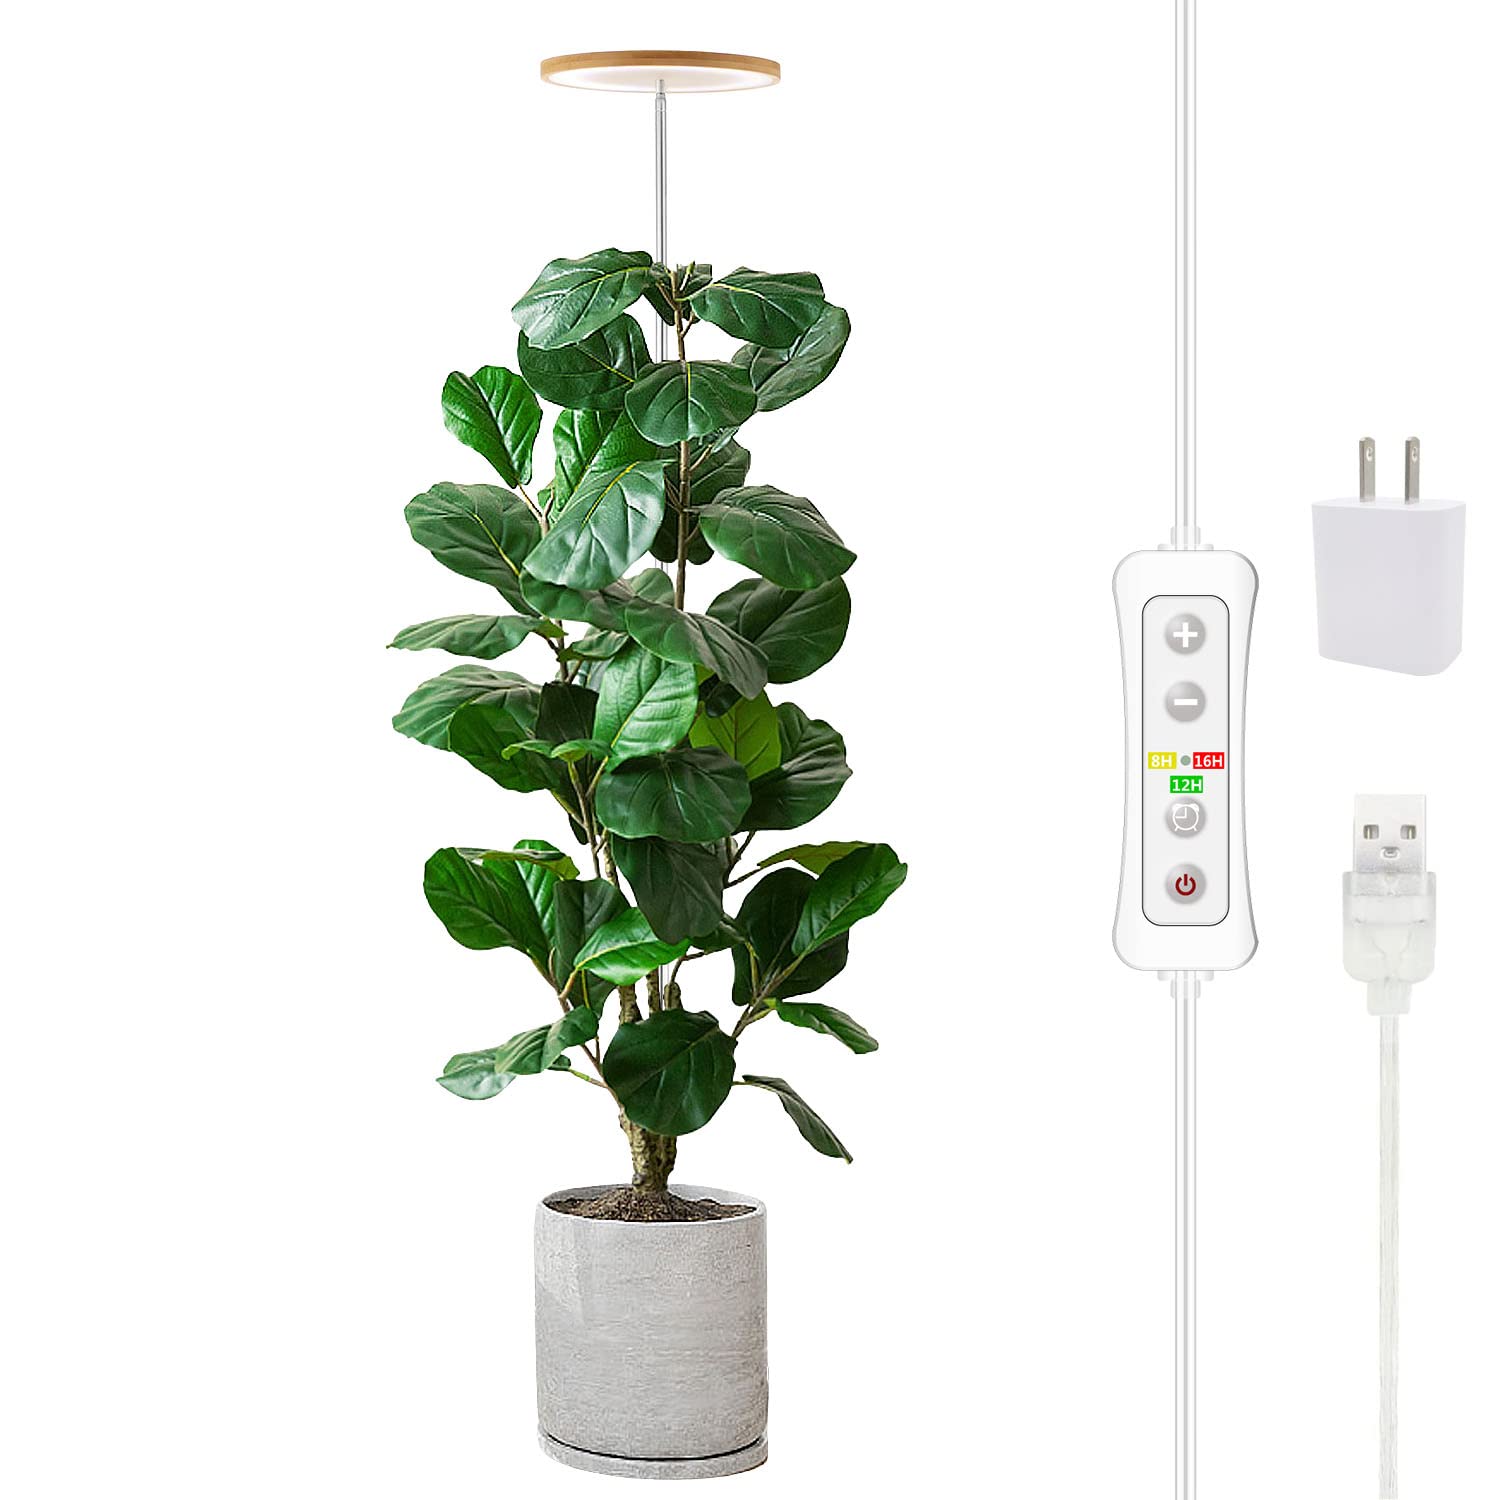 Yadoker Plant Grow Light,yadoker LED Growing Light Full Spectrum for Indoor Plants,Height Adjustable, Automatic Timer, 5V Low Safe Volta